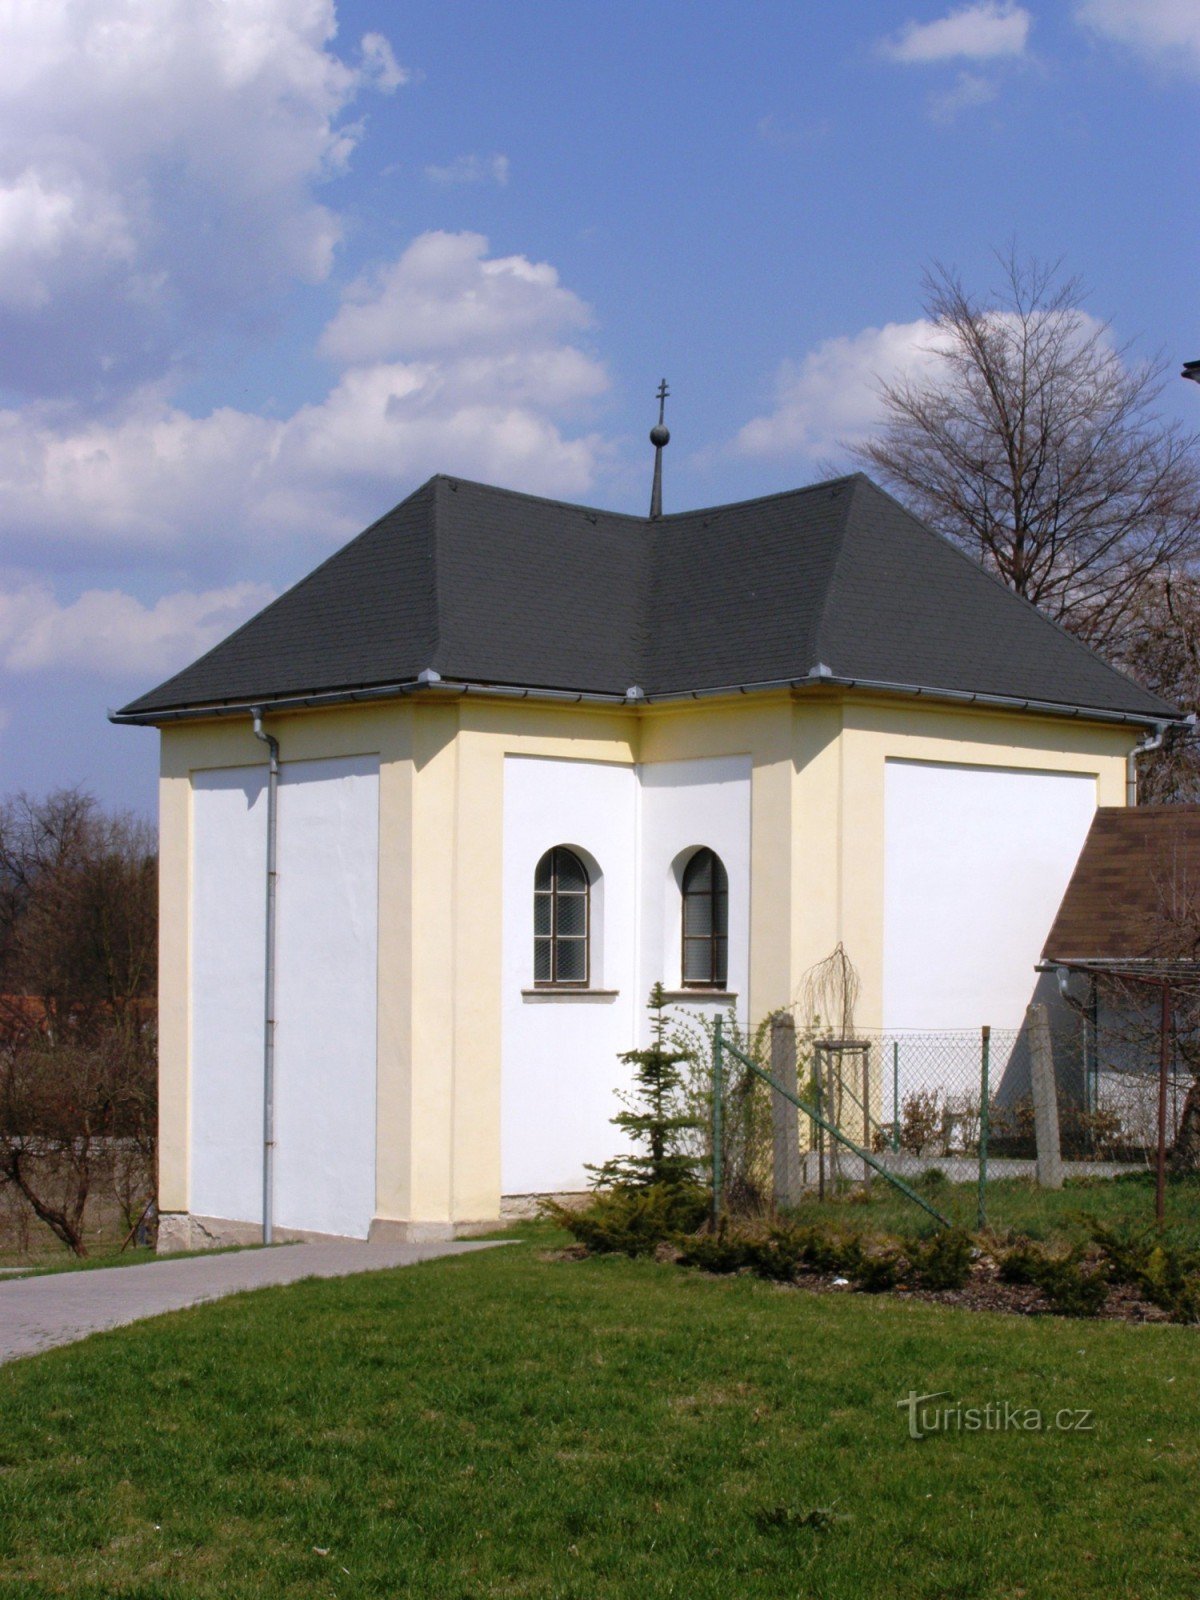 Žamberk - ossuary af Jomfru Maria af sorger